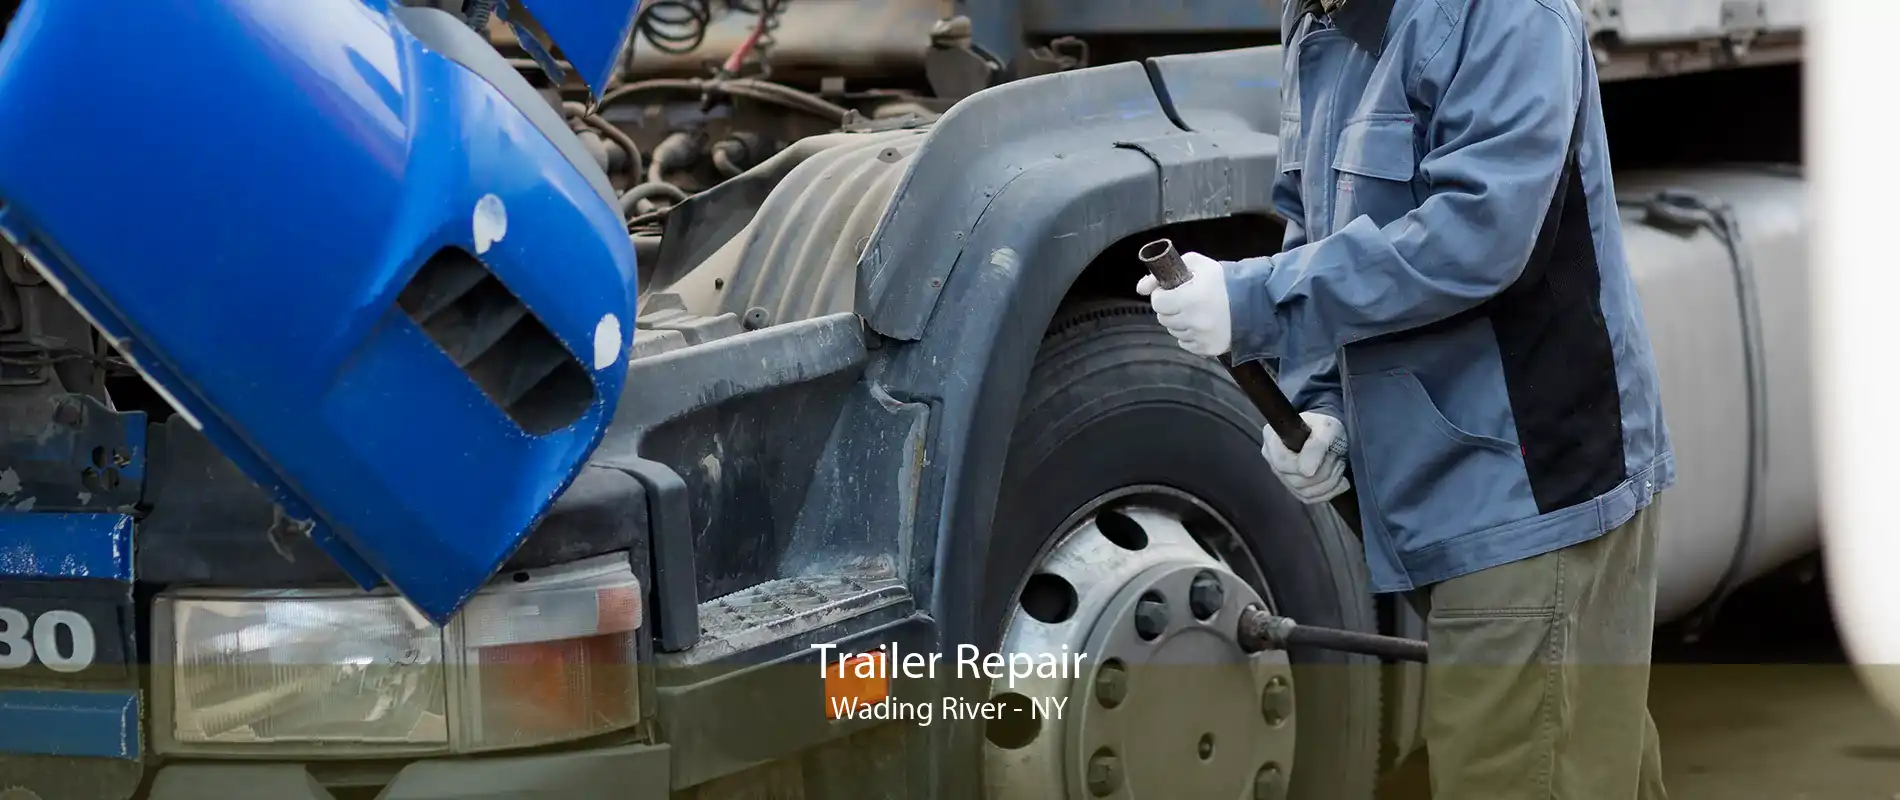 Trailer Repair Wading River - NY